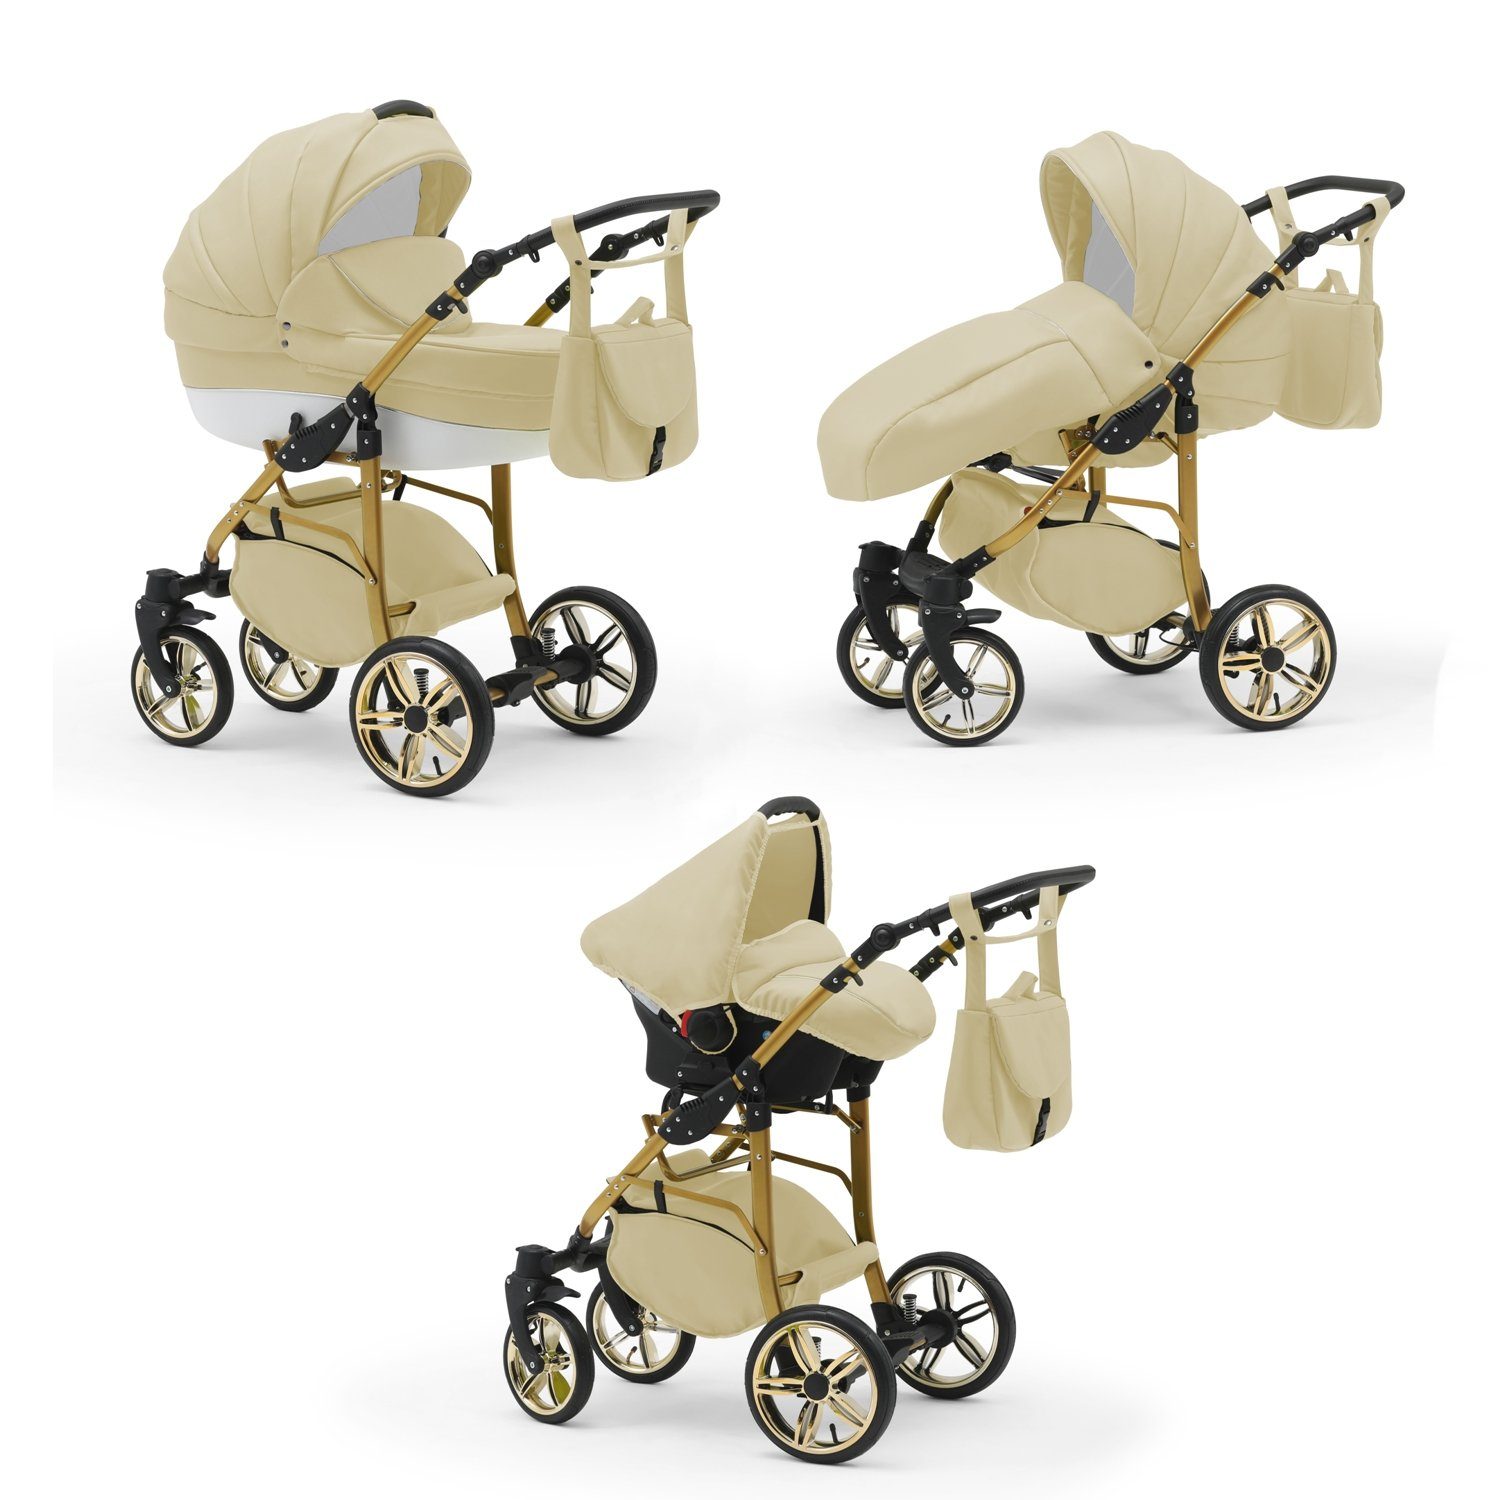 1 - 3 in 46 babies-on-wheels Kombi-Kinderwagen in Farben ECO 16 Teile Kinderwagen-Set Gold Beige-Weiß Cosmo -